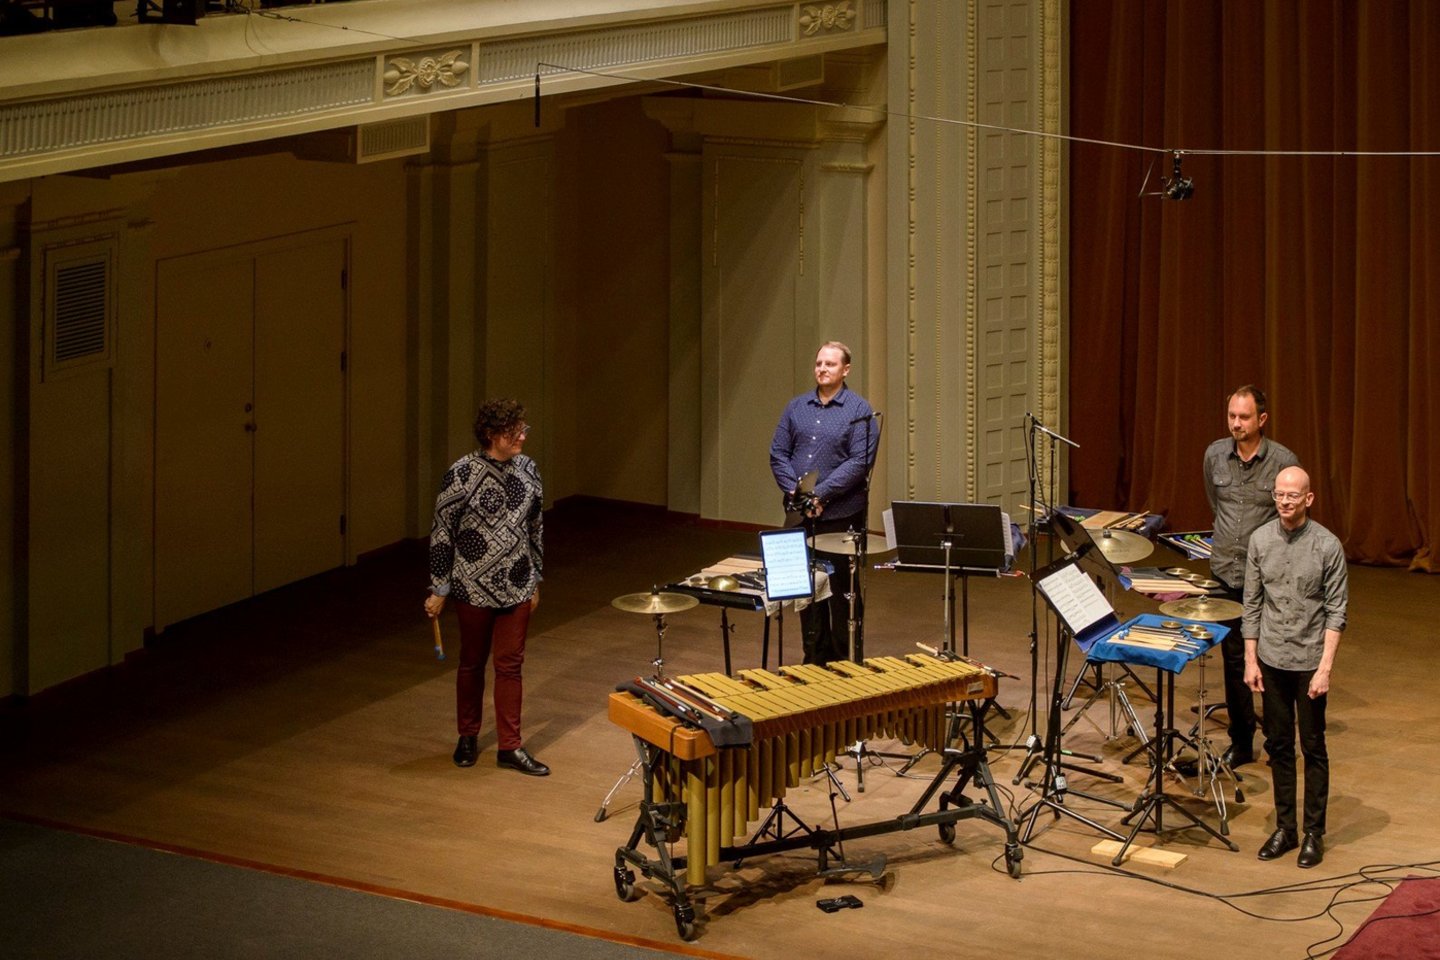 Spalio 28 d. Lietuvos nacionalinėje filharmonijoje pasirodė Bostono perkusijos grupė (BPeG), kuriai negailima liaupsių už savitas interpretacijas.<br>Rengėjų nuotr. 